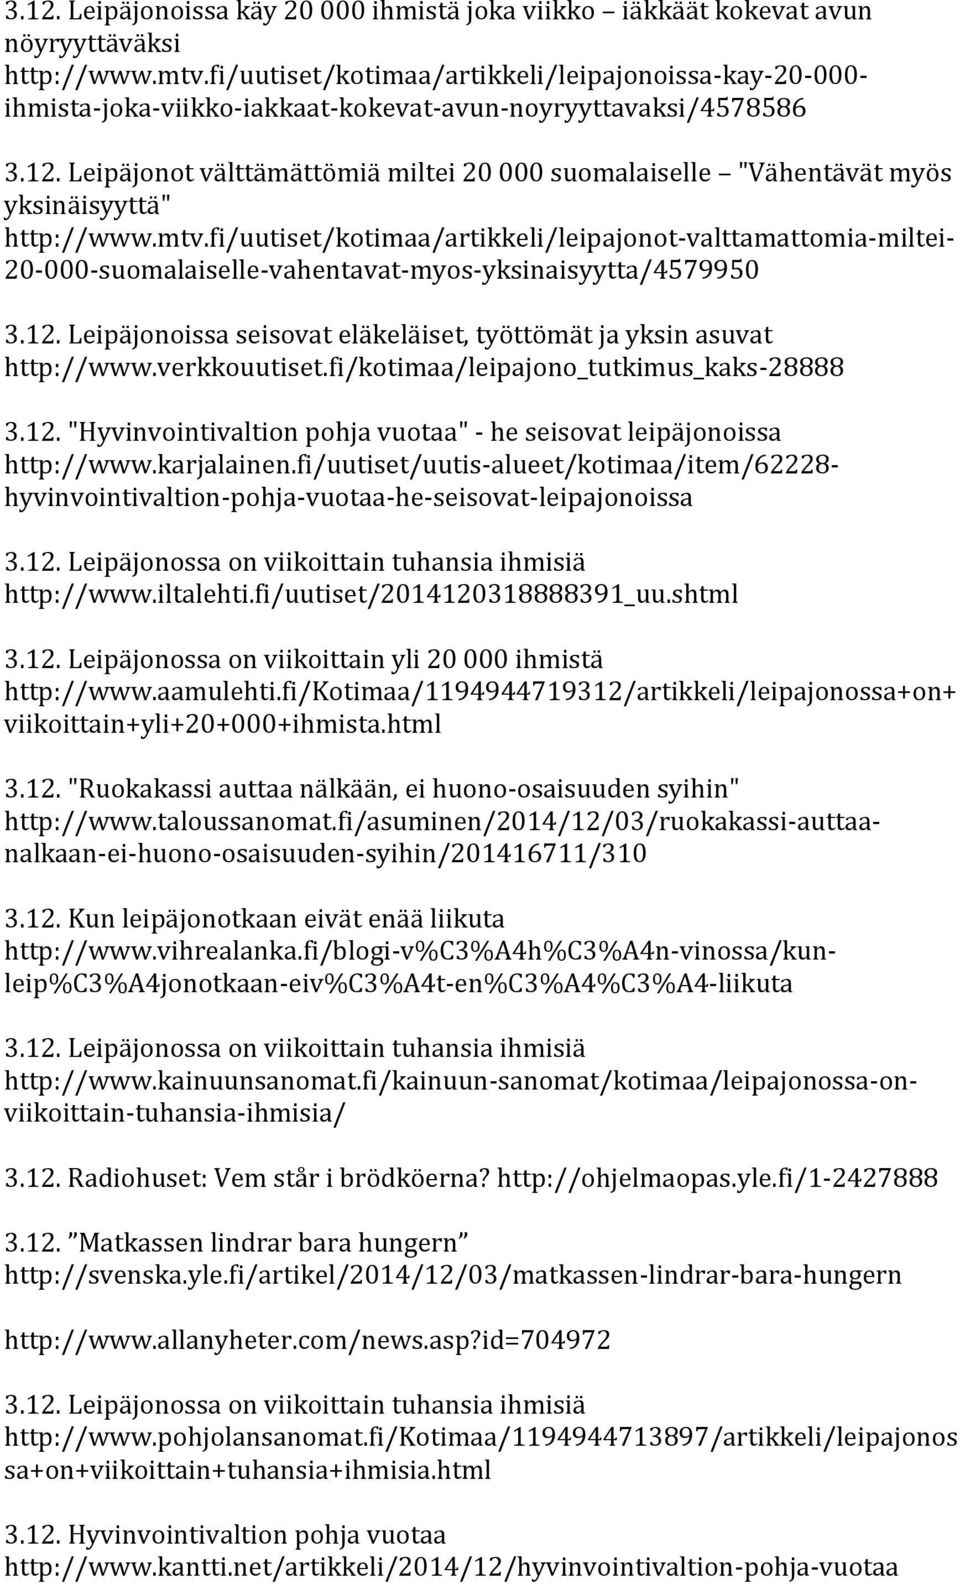 Leipäjonot välttämättömiä miltei 20 000 suomalaiselle "Vähentävät myös yksinäisyyttä" http://www.mtv.